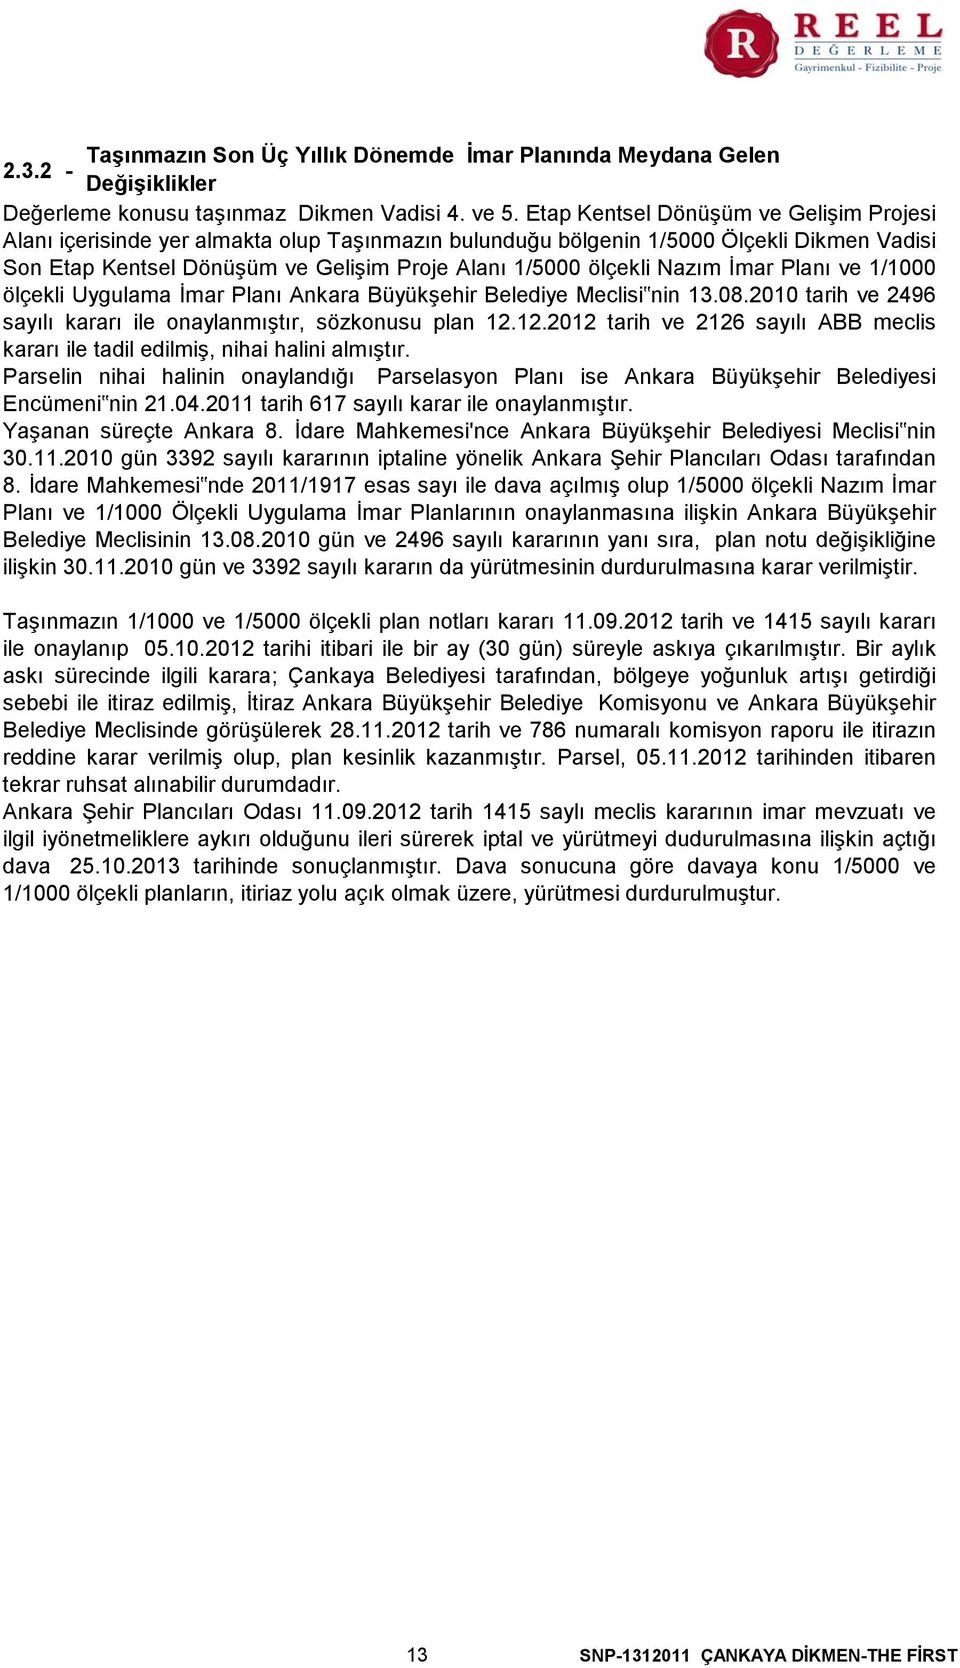 Nazım İmar Planı ve 1/1000 ölçekli Uygulama İmar Planı Ankara Büyükşehir Belediye Meclisi nin 13.08.2010 tarih ve 2496 sayılı kararı ile onaylanmıştır, sözkonusu plan 12.